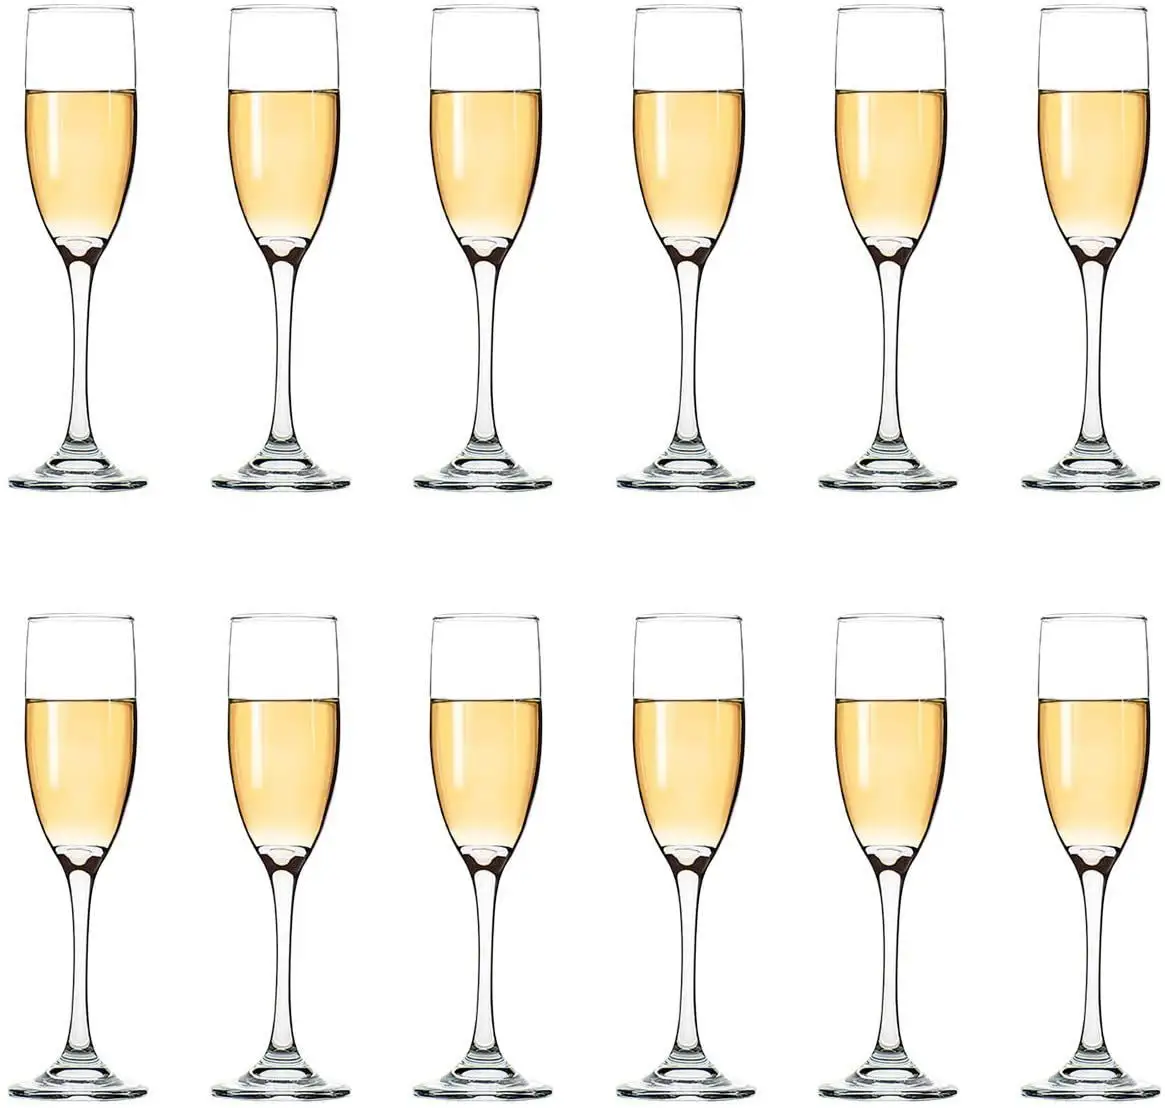 Высококачественная Роскошная Коктейльная чашка мартини стеклянная Хрустальная винная бокала набор персонализированных бокалов